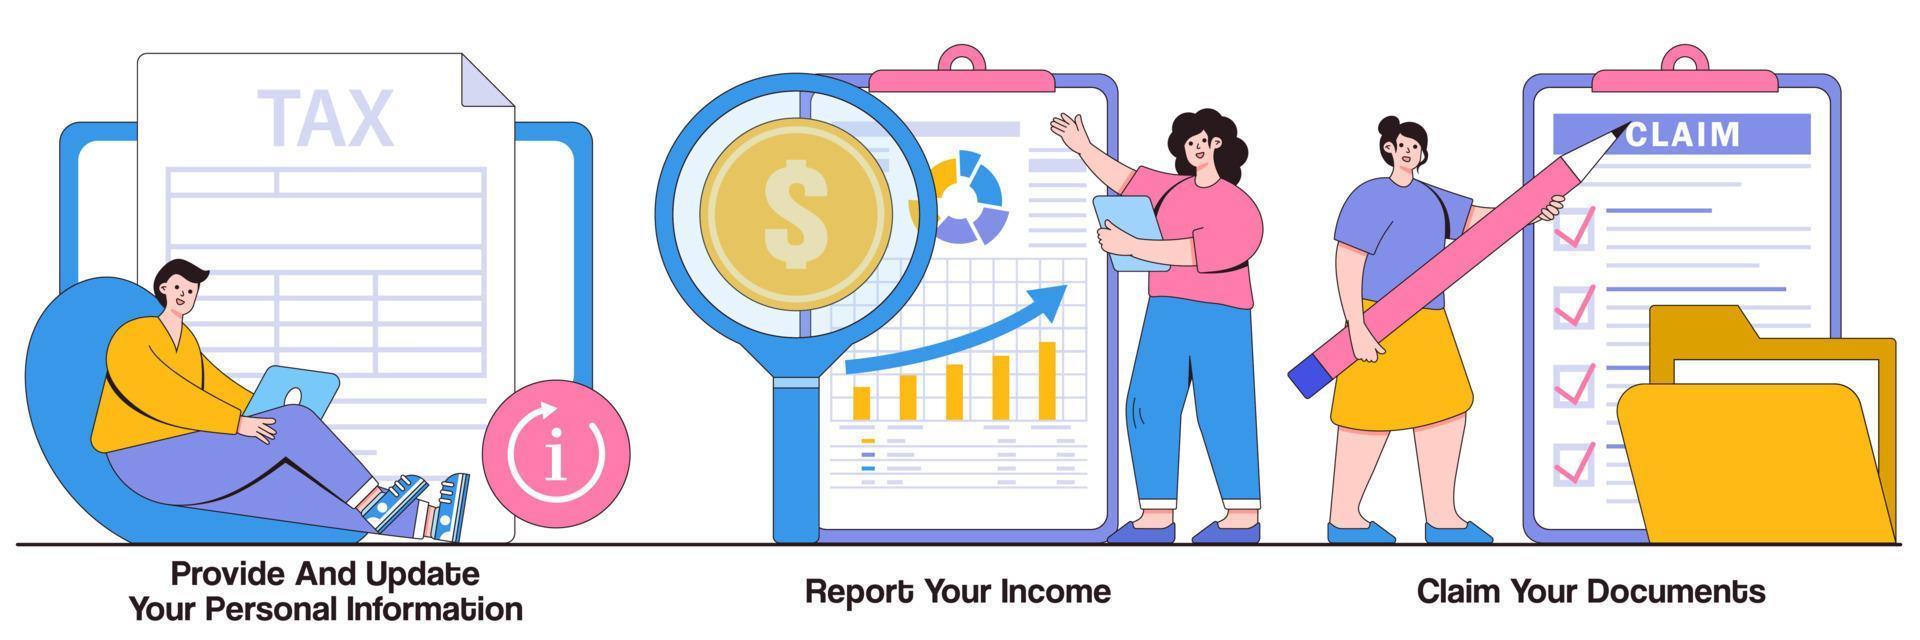 verstrek en update uw persoonlijke informatie, rapporteer inkomsten, claim documenten geïllustreerd pakket vector